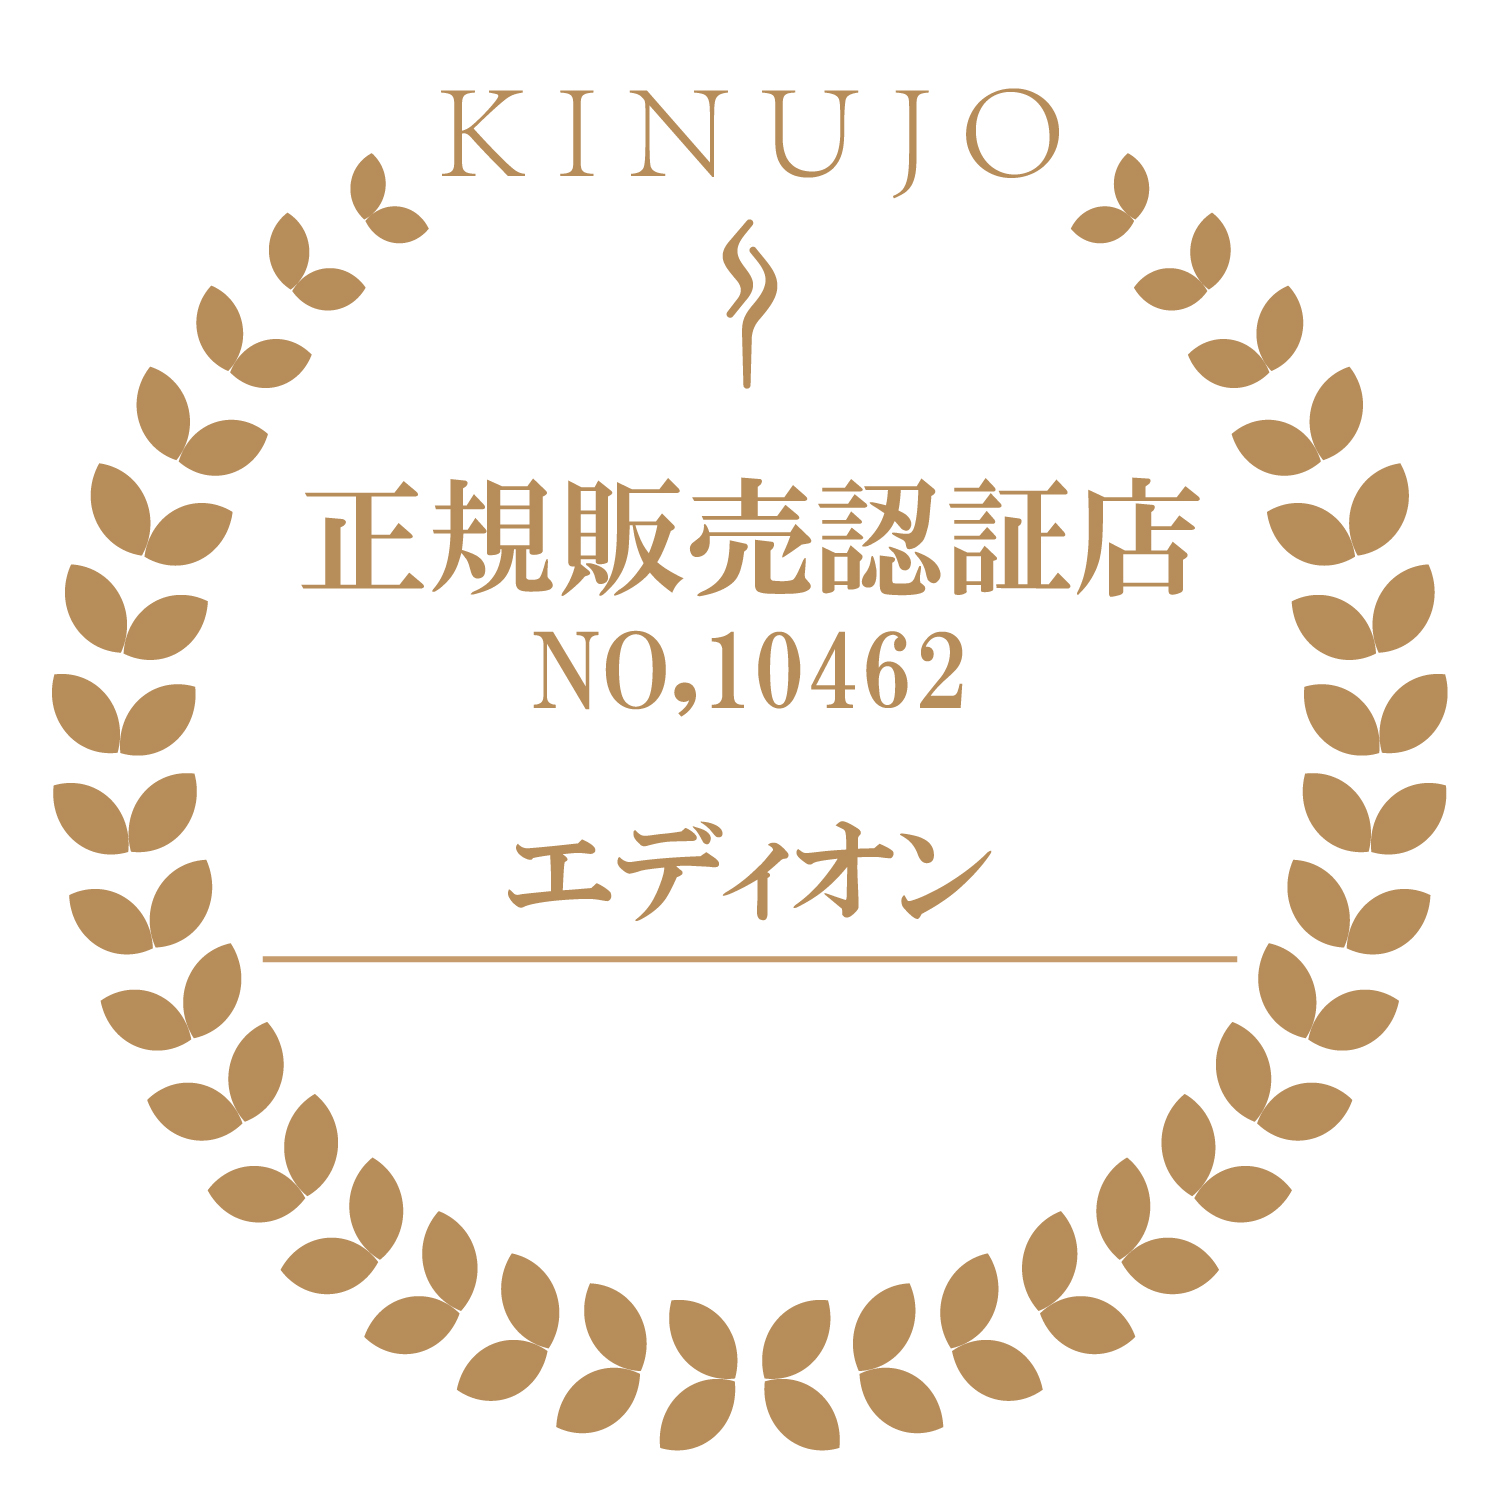 【新品】 絹女 DS100 ストレートアイロン ヘアアイロン 黒 KINUJO